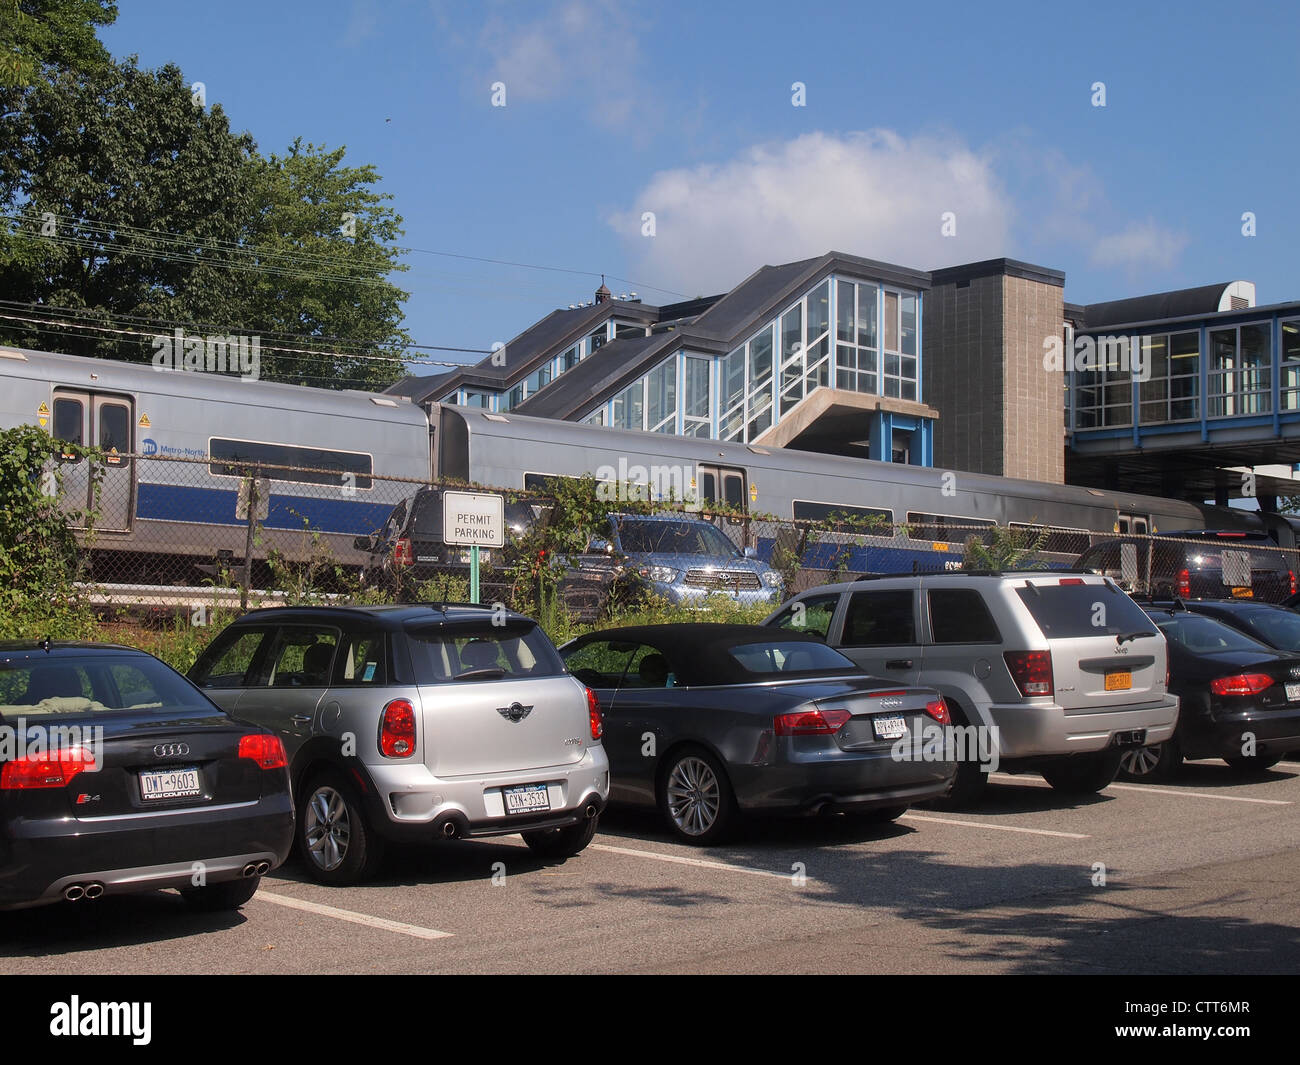 Consentire il parcheggio per i pendolari a nord la stazione ferroviaria di White Plains, New York, Stati Uniti d'America, 16 luglio 2012, © Katharine Andriotis Foto Stock